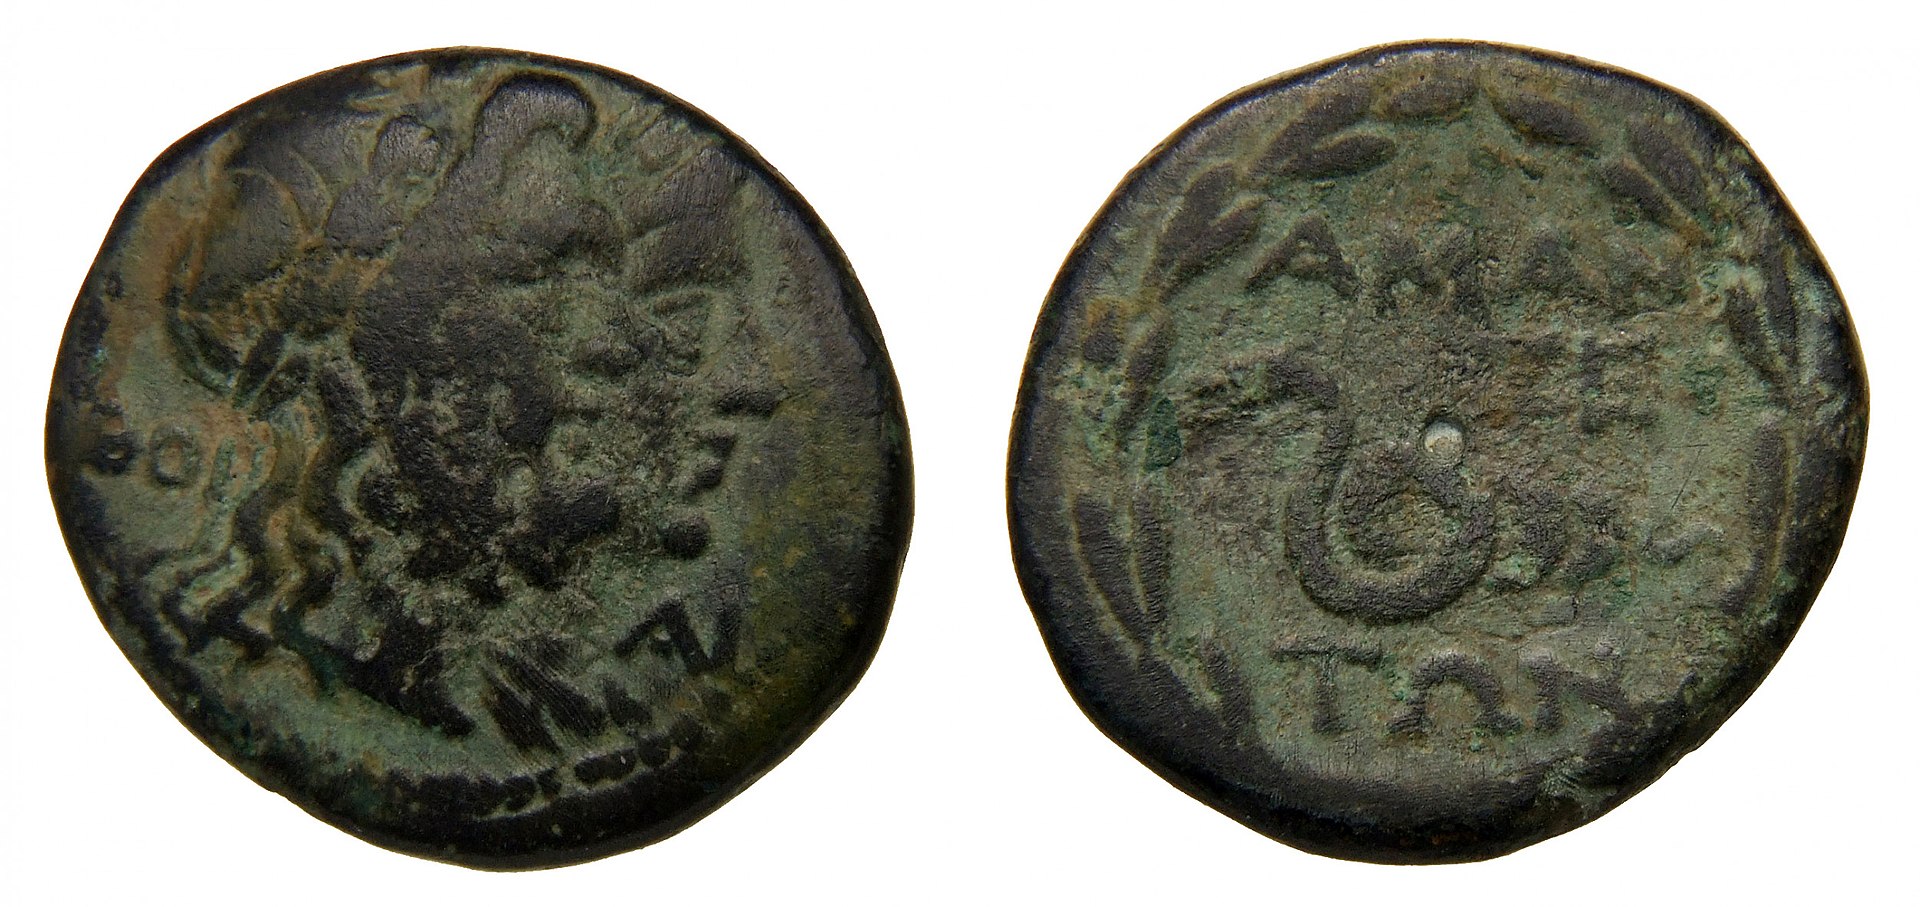 Monedhë e lashtë e Amantisë që simbolizon pavarësinë